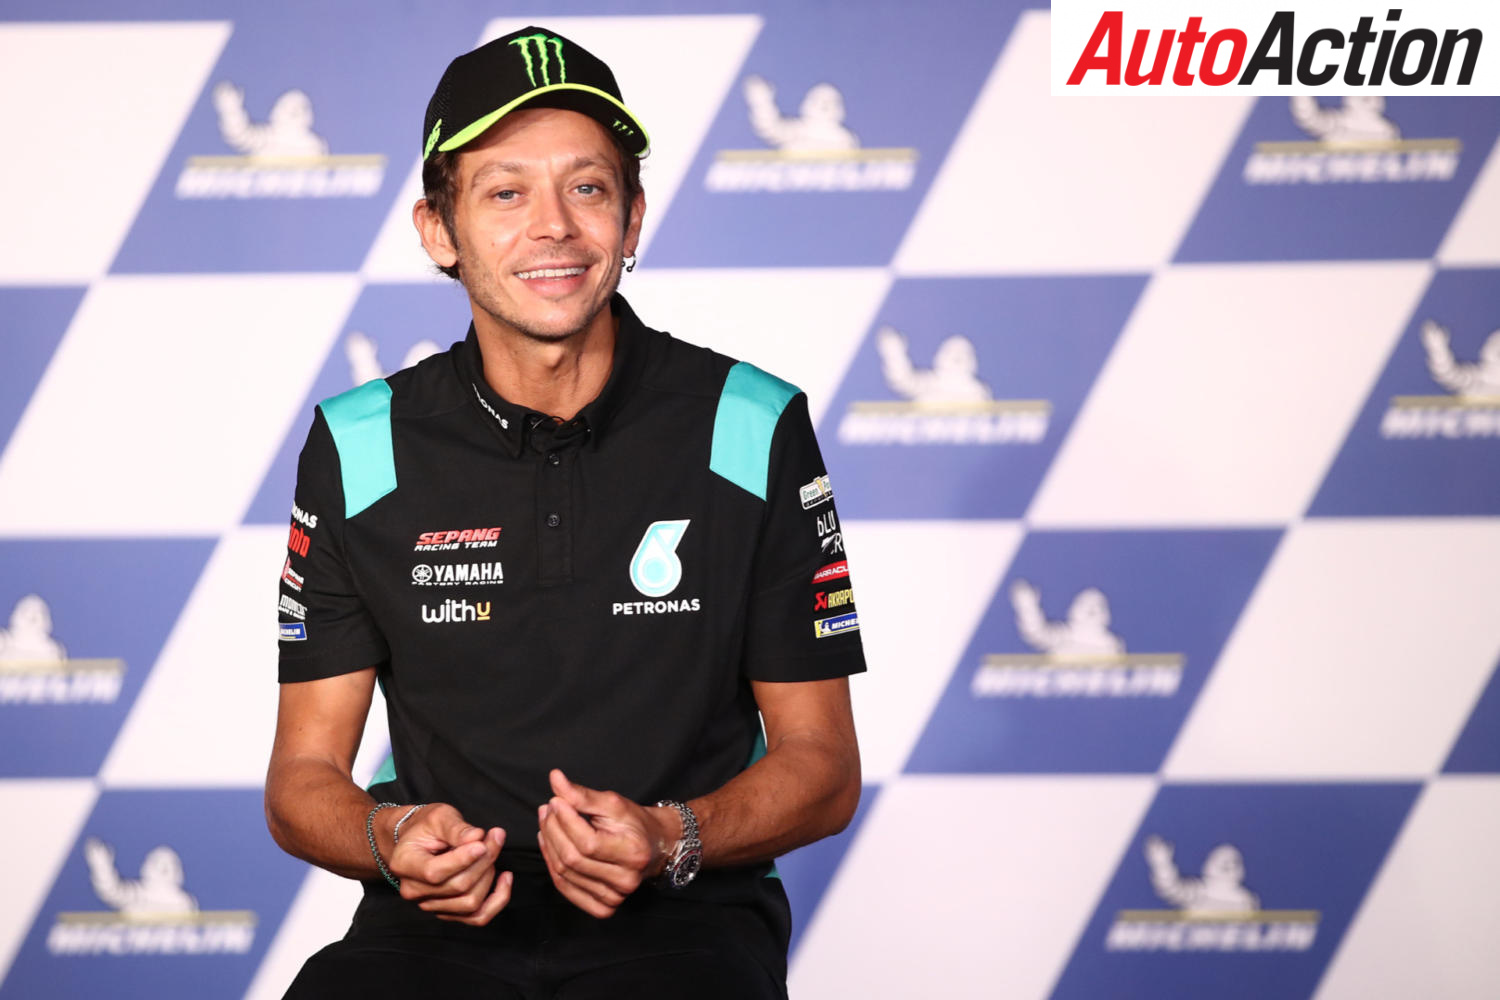 Valentino Rossi announces MotoGP retirement - Image: Motorsport Images